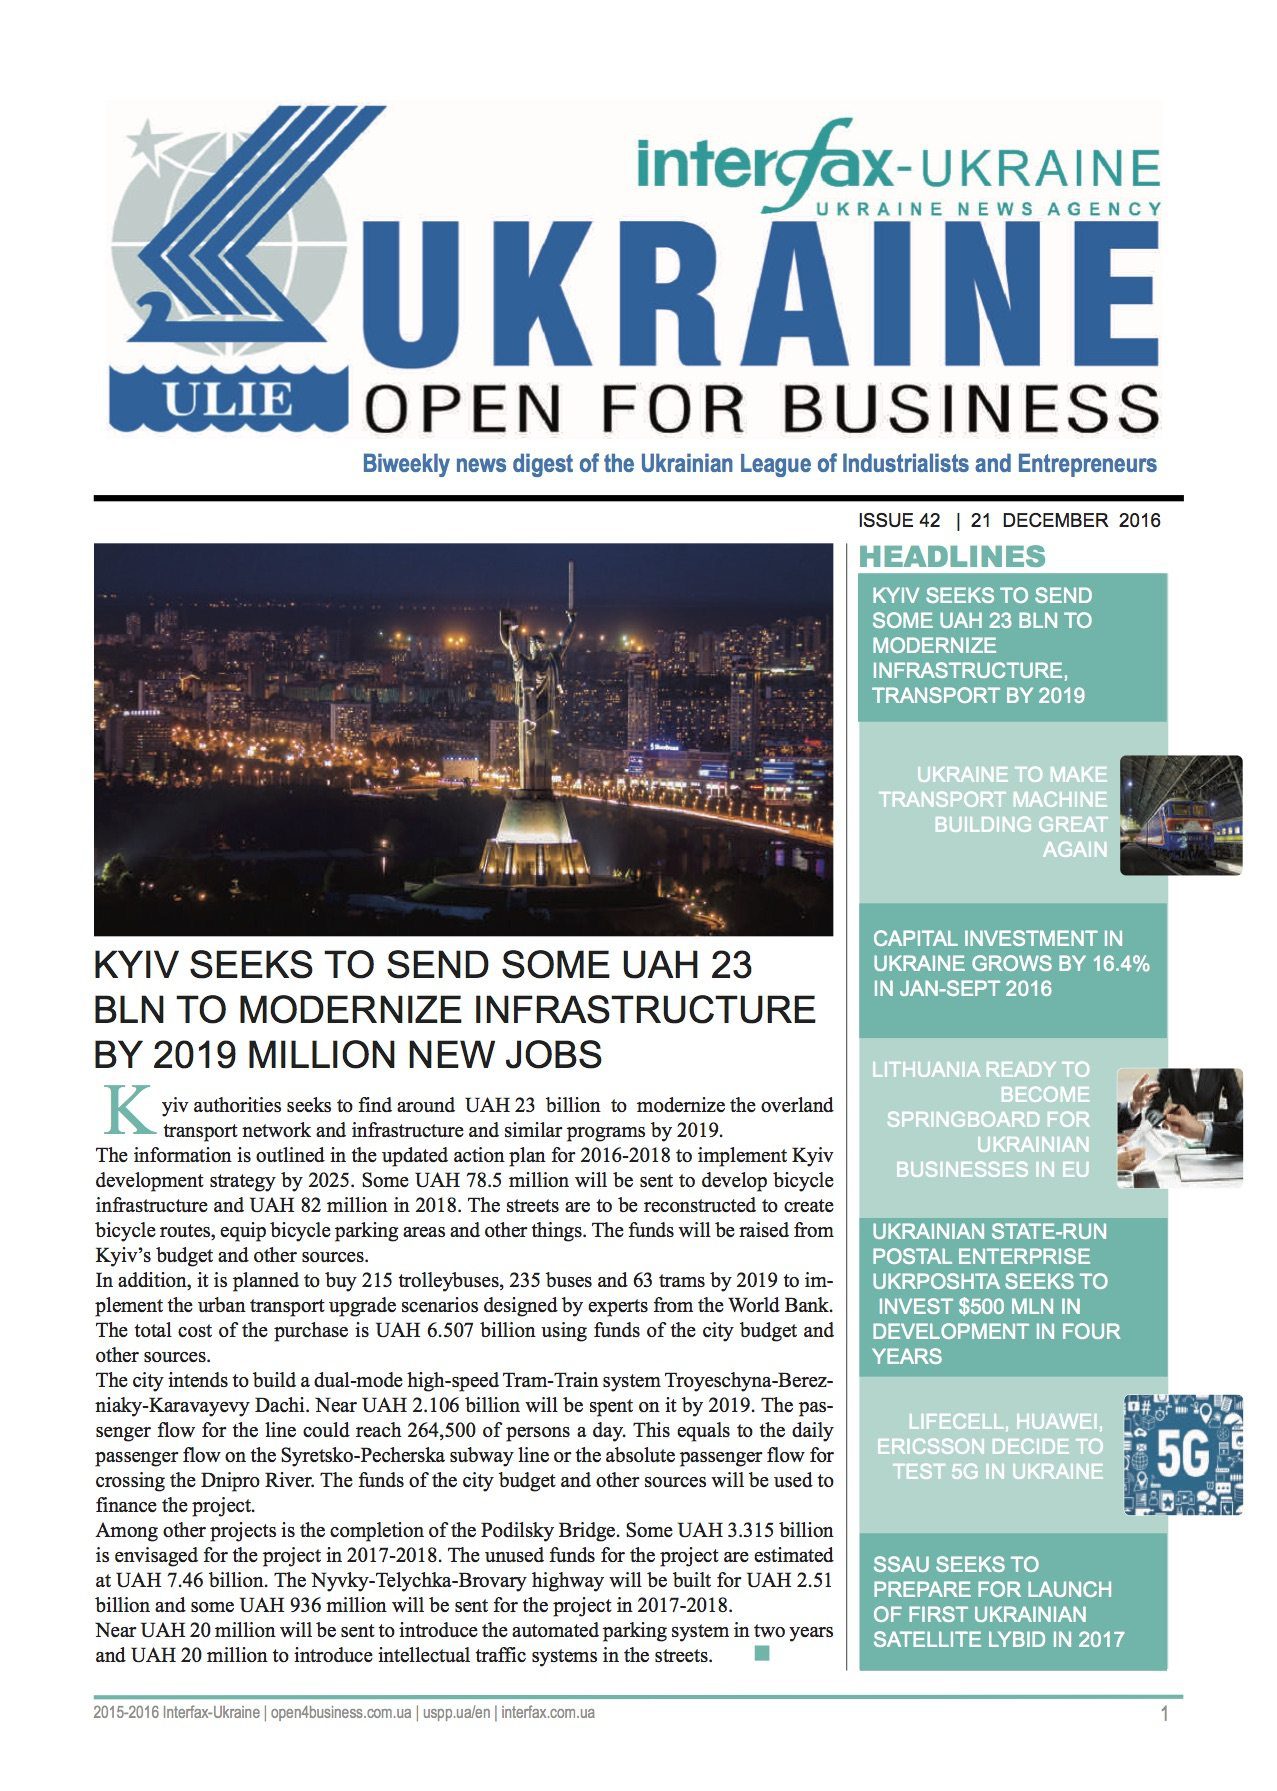 ukraine-open-for-business_interfax-ukraine42